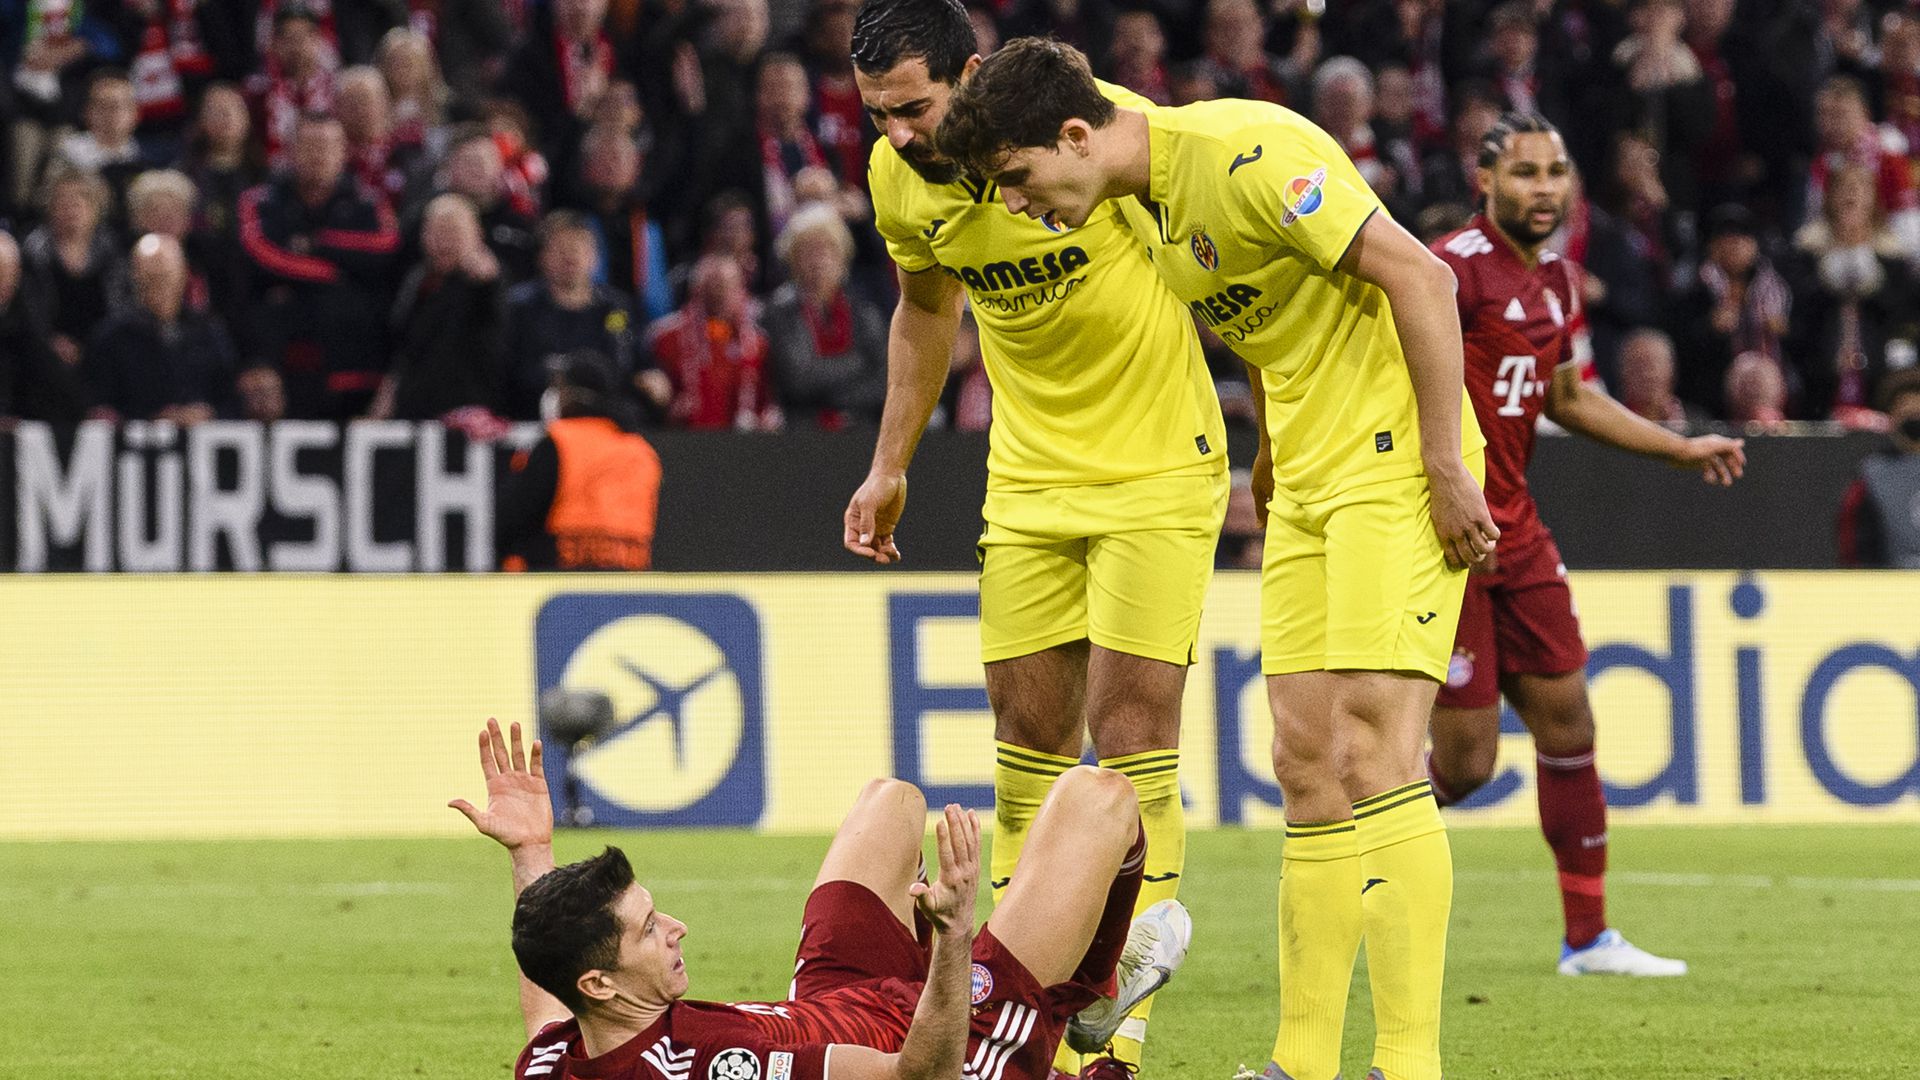 Az első repedés a falon: a Villarreal elleni Bajnokok Ligája-negyeddöntős kiesés után a Bayern München vezetősége elkezdett kételkedni Julian Nagelsmannban. Fotó: Getty Images